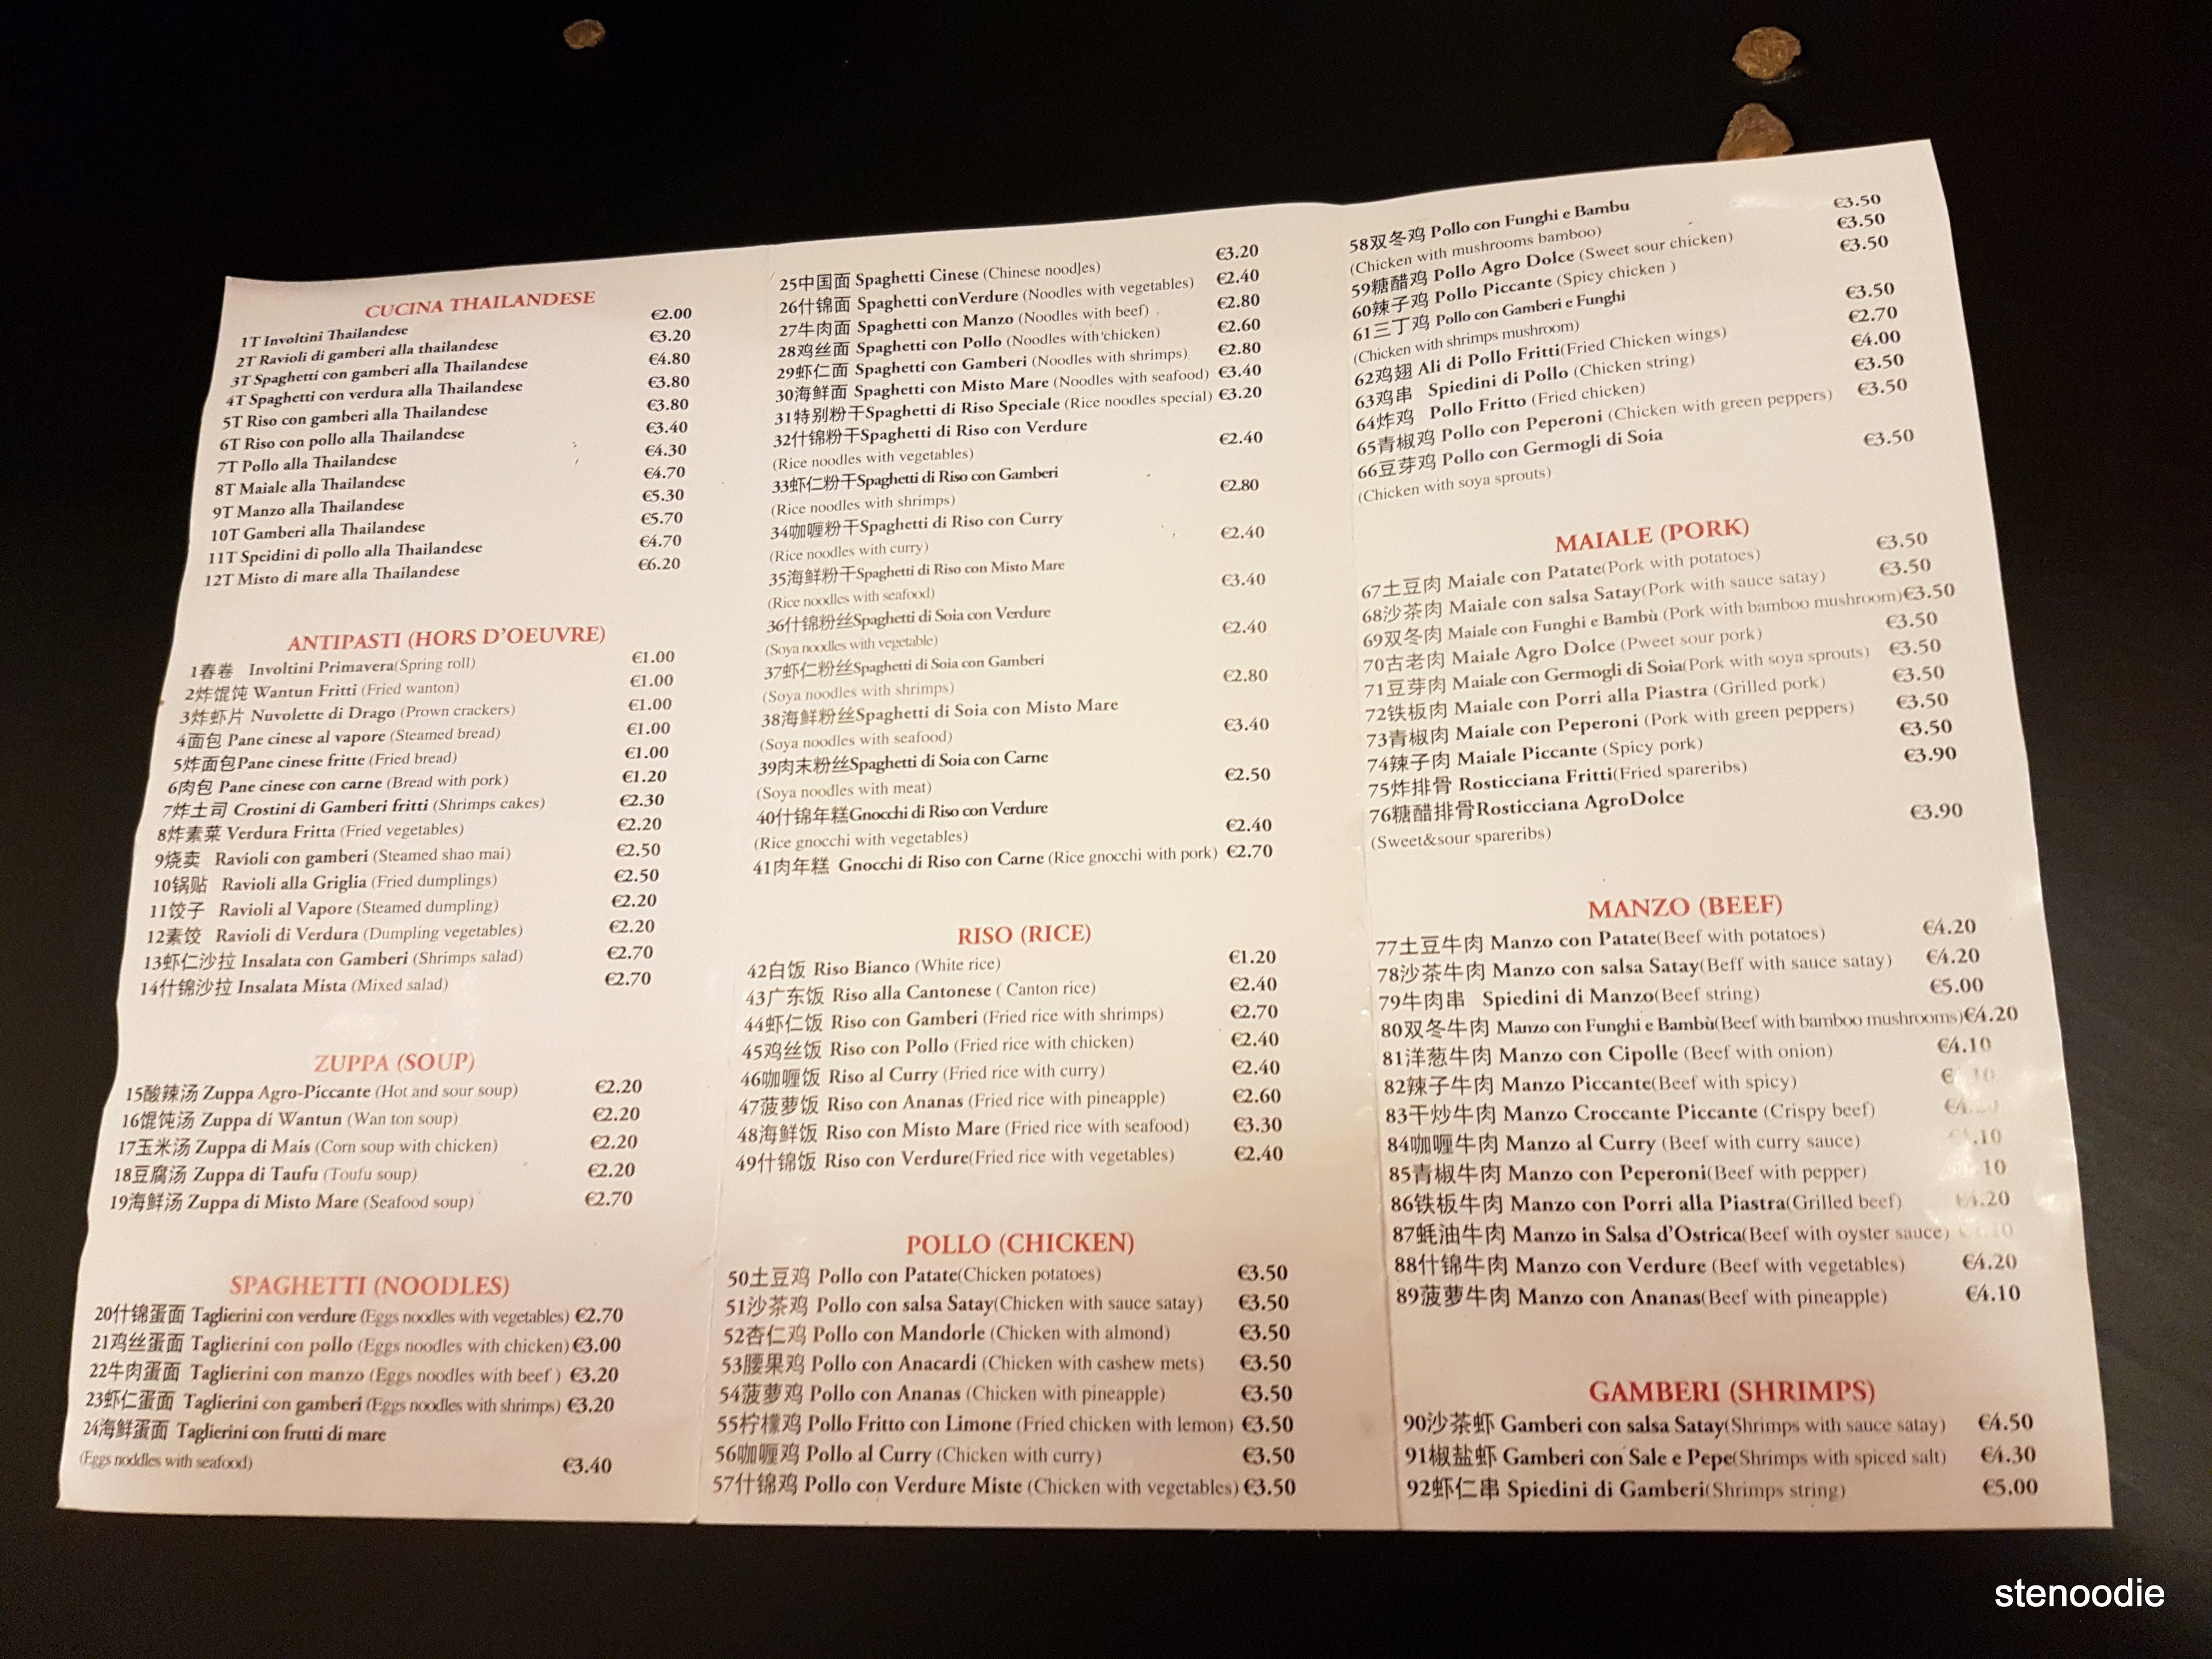 Rosticceria Girasole menu and prices